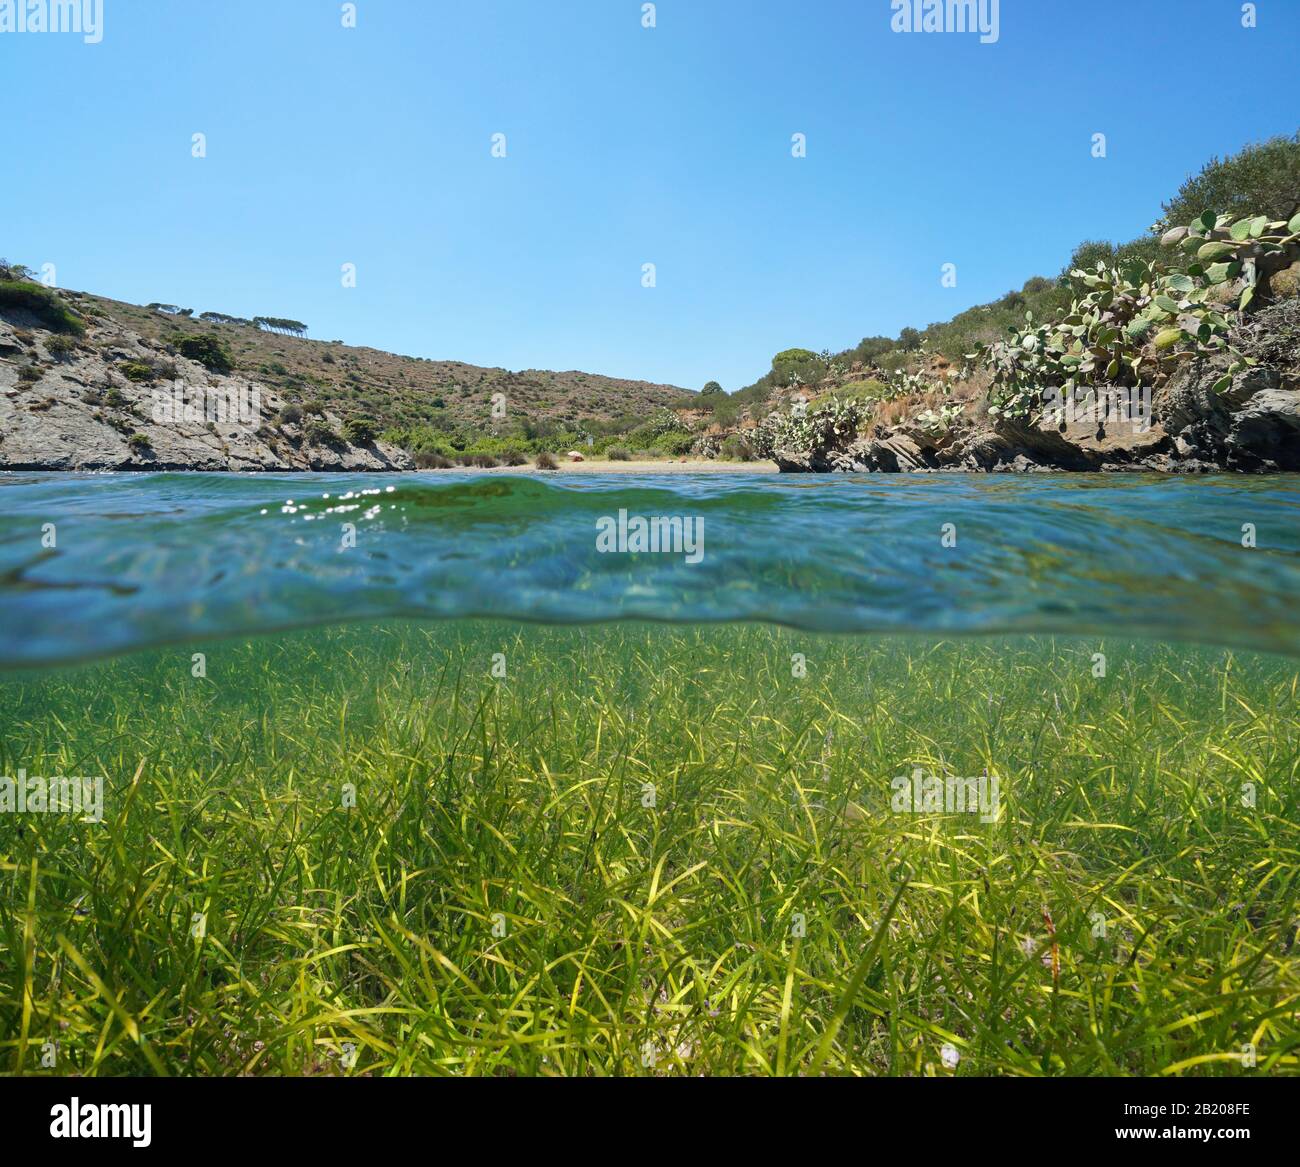 Paisible crique méditerranéenne avec de l'herbe sous l'eau, vue partagée sur et sous la surface de l'eau, Espagne, Costa Brava, Cap de Creus, Cadaques Banque D'Images